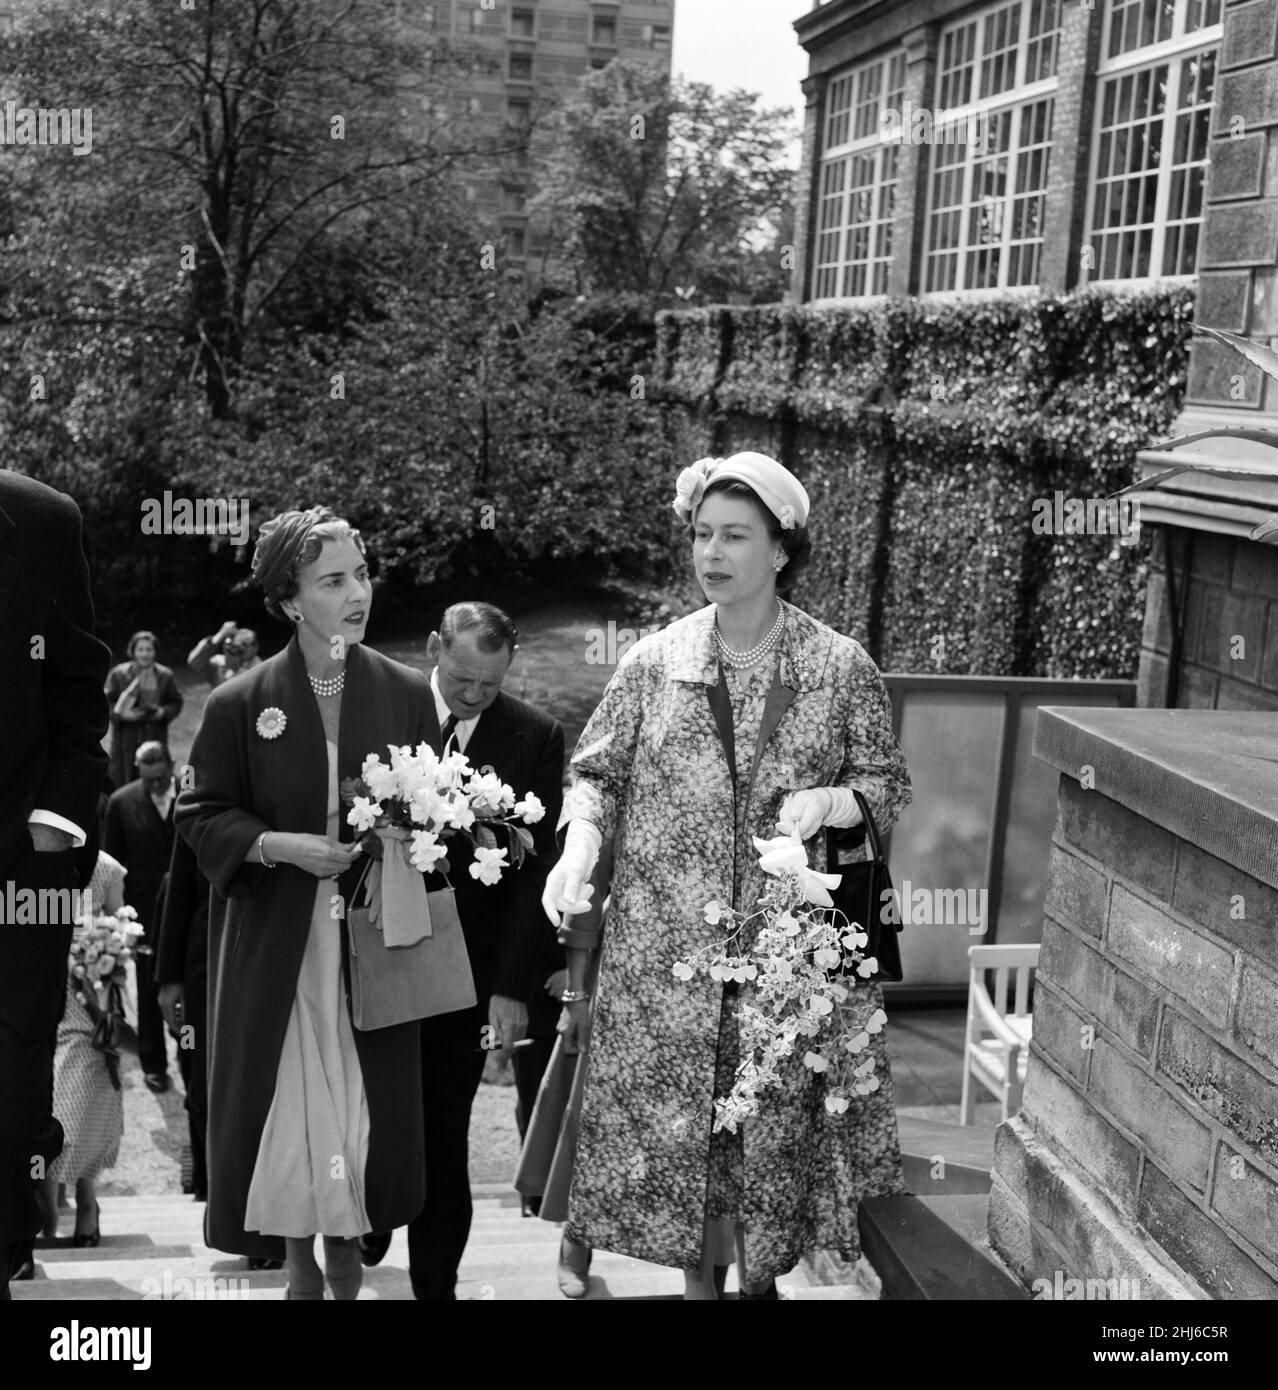 Königin Elizabeth II. Und Prinz Philip, Herzog von Edinburgh, besuchen Dänemark. Königin Ingrid von Dänemark (links) und Königin Elizabeth während ihrer Tour durch die Carlsberg-Brauerei. 22nd Mai 1957. Stockfoto